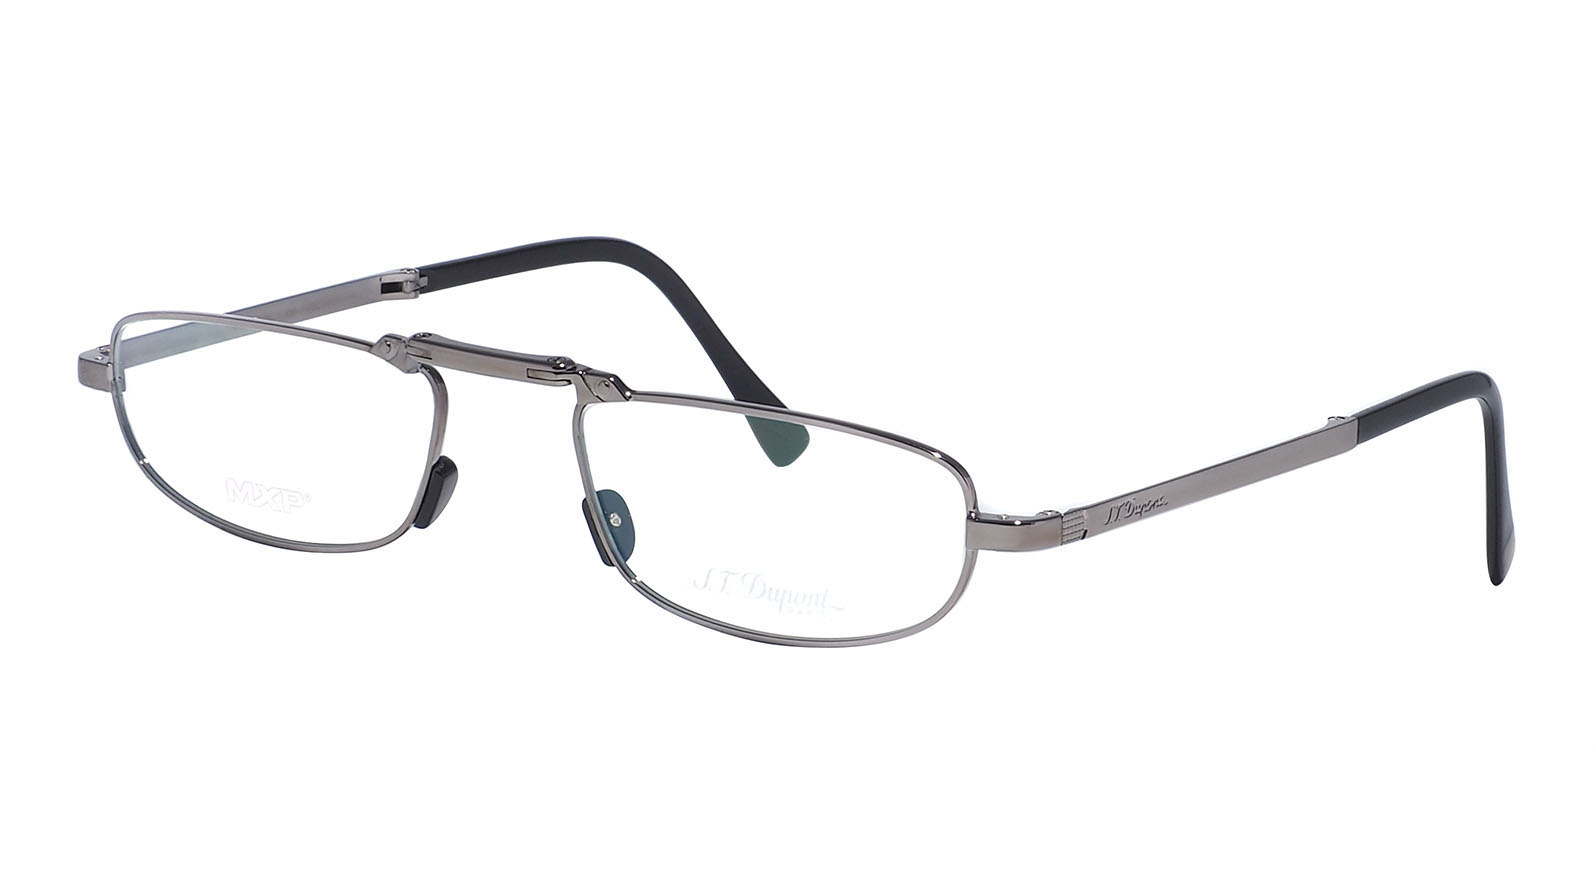 Dupont S.T. 8054 03 пенсне очки glodiatr для чтения в футляре 1 0